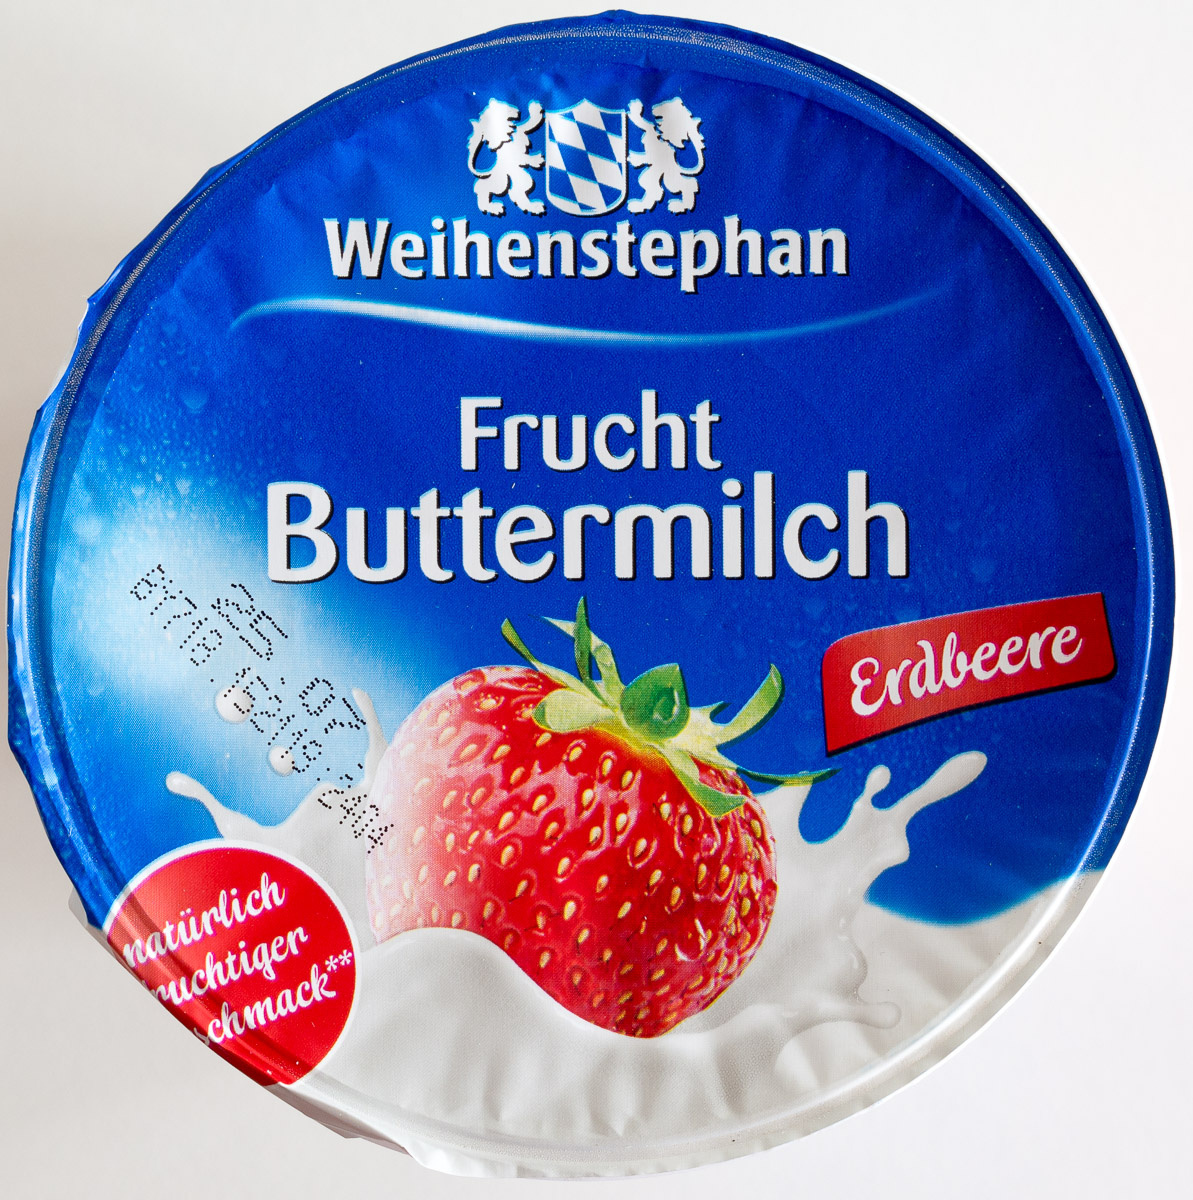 Frucht Buttermilch Erdbeere - Produkt